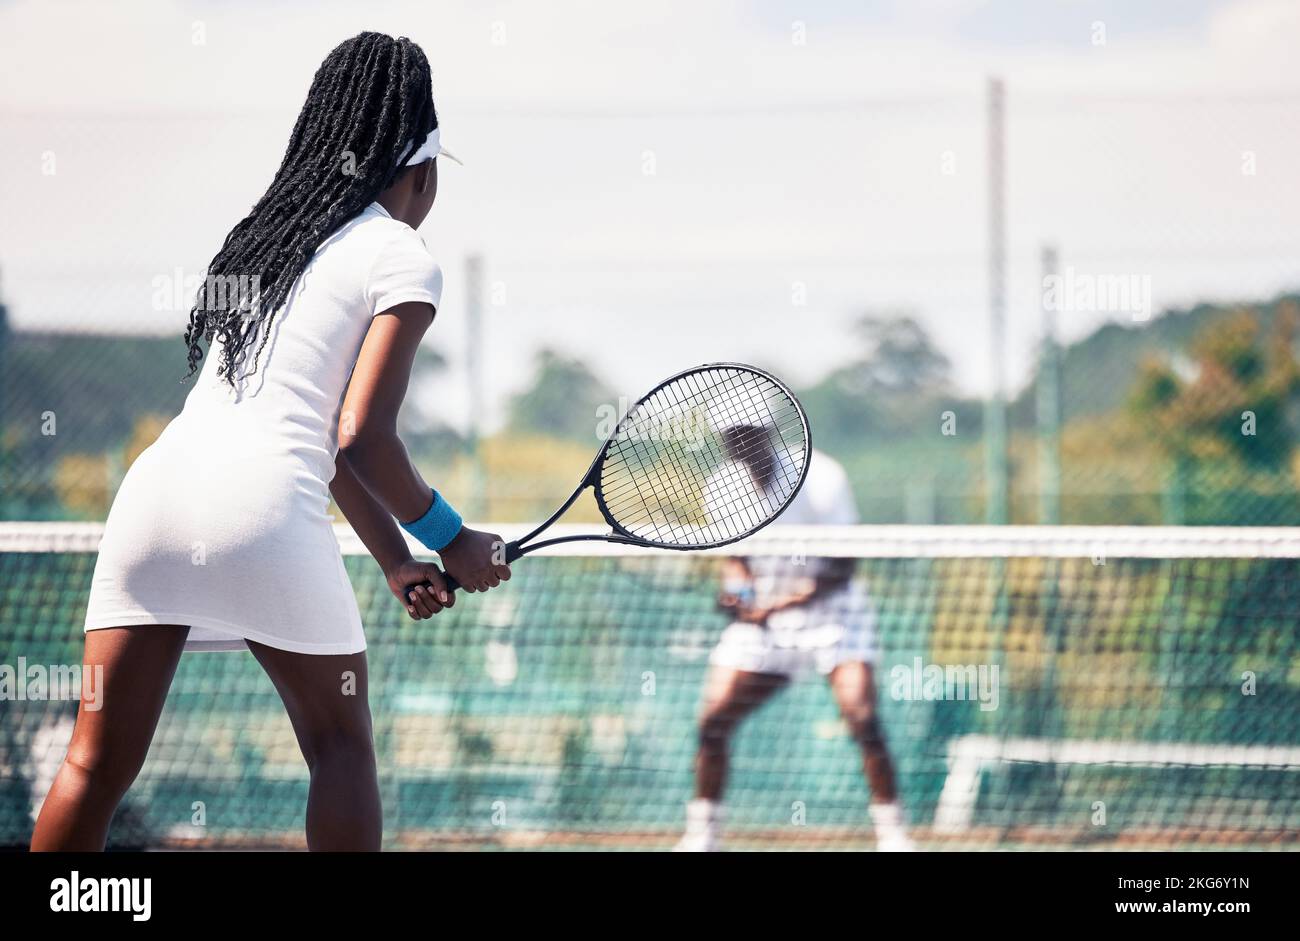 Tenis, juego de equipo y competición de entrenamiento para parejas africanas, ejercicio deportivo o bienestar al aire libre. Pista de tenis, atleta de tenis y mujer africana Foto de stock